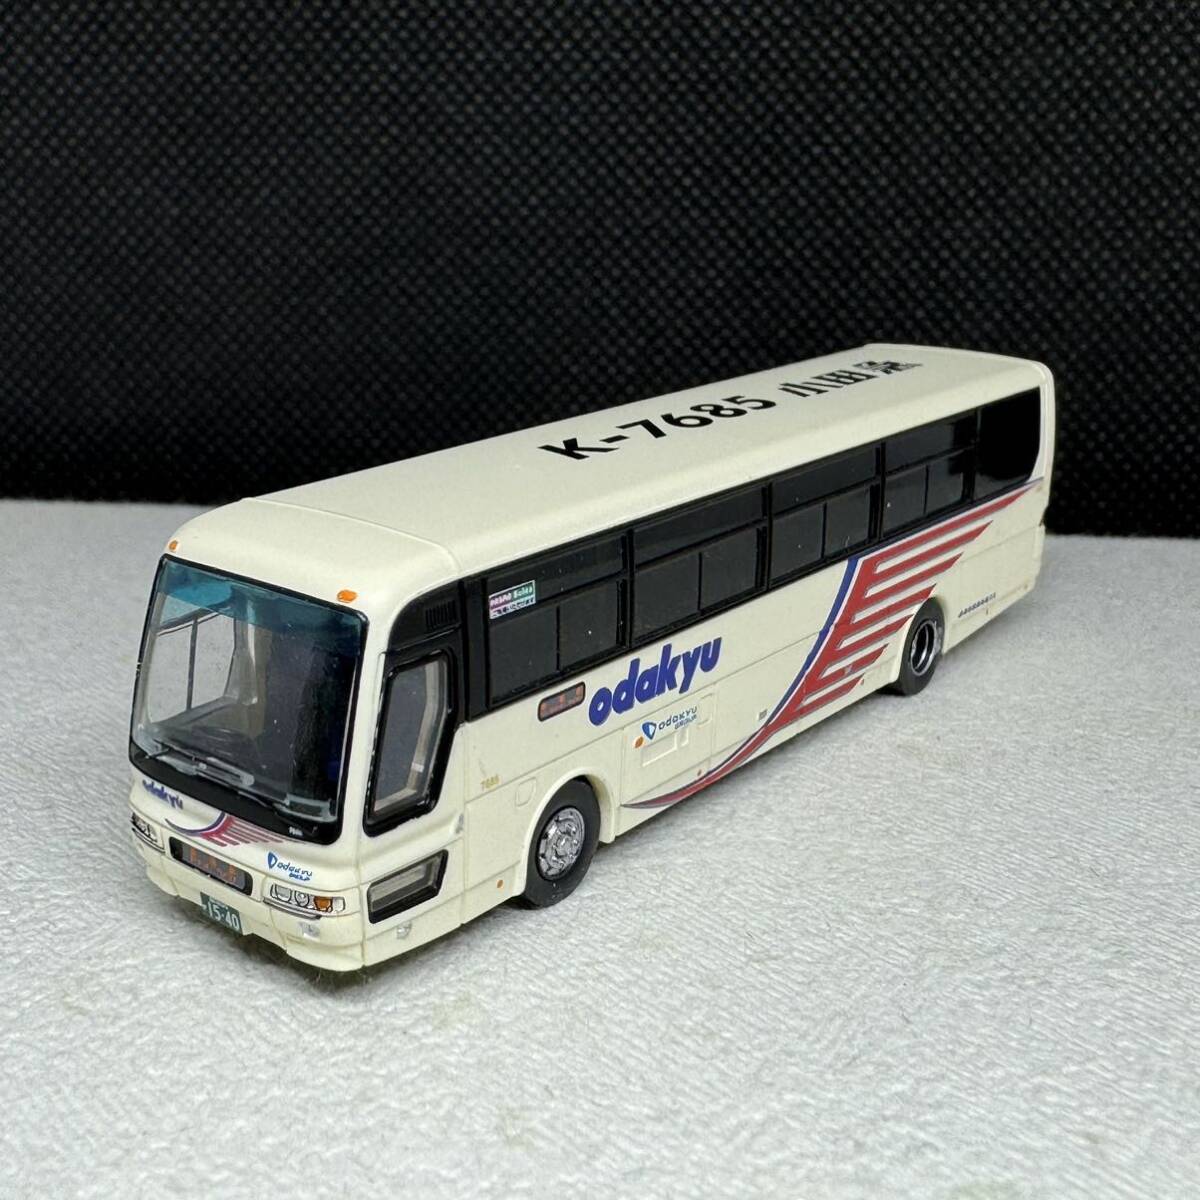 バスコレクション 小田急箱根高速バス 三菱ふそう ニューエアロバスの画像1